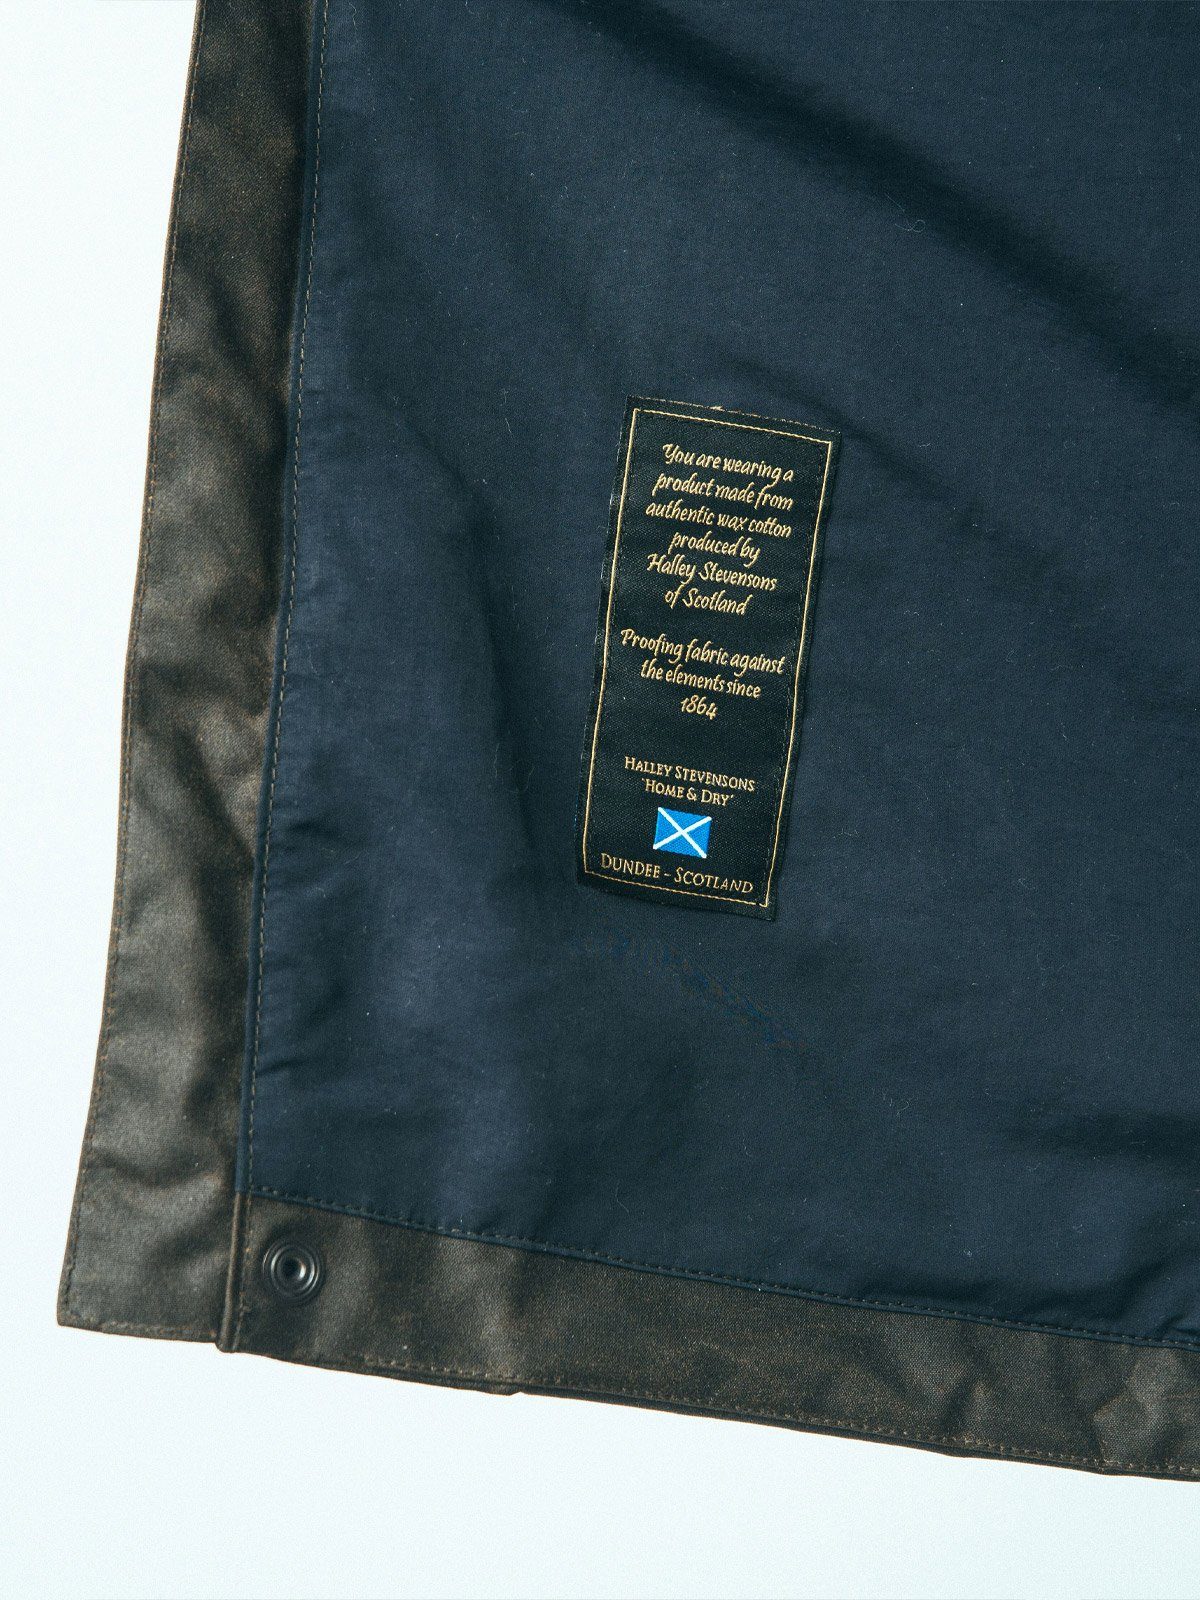 Eiger Waxed Canvas Jacket från Mission Workshop - vädertåliga väskor och tekniska kläder - San Francisco och Los Angeles - byggd för att tåla - garanterad för alltid